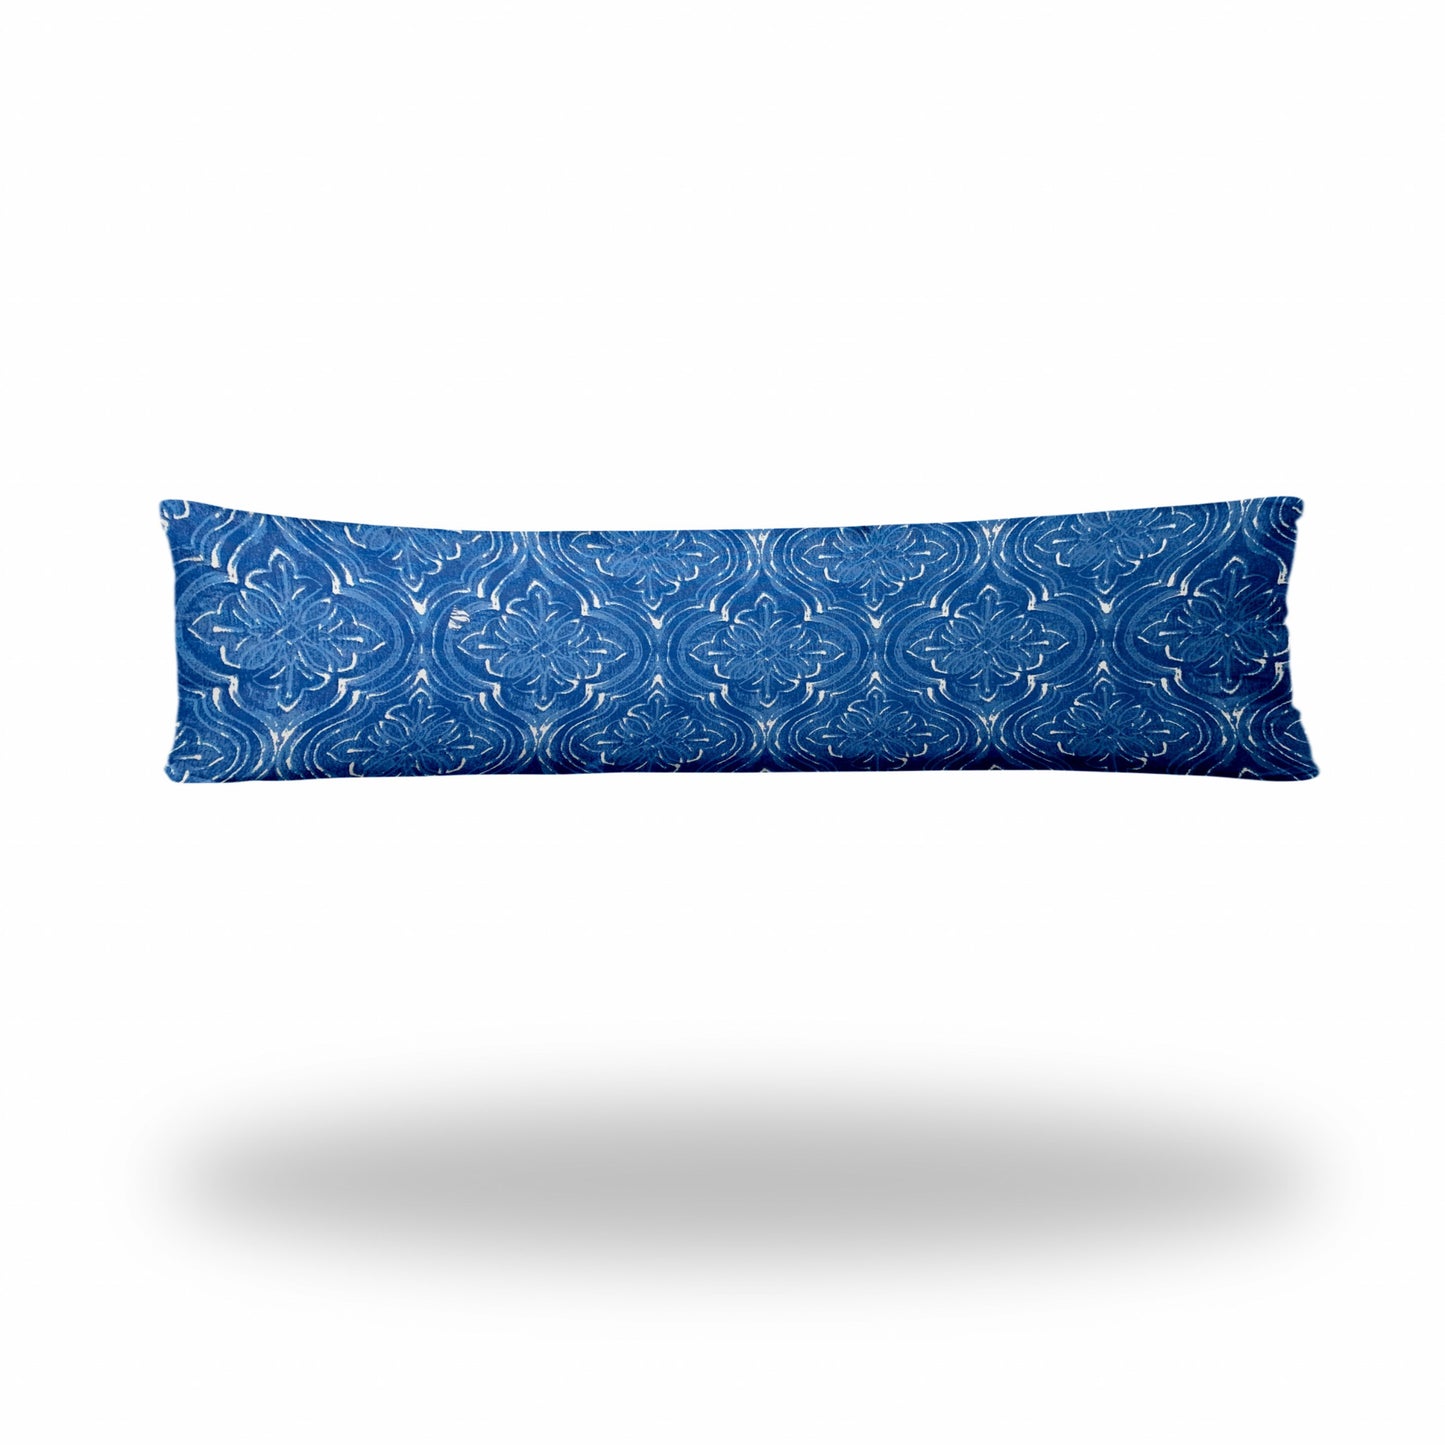 12" X 48" Blue And White Zippered Ikat Lumbar Indoor Outdoor Pillow